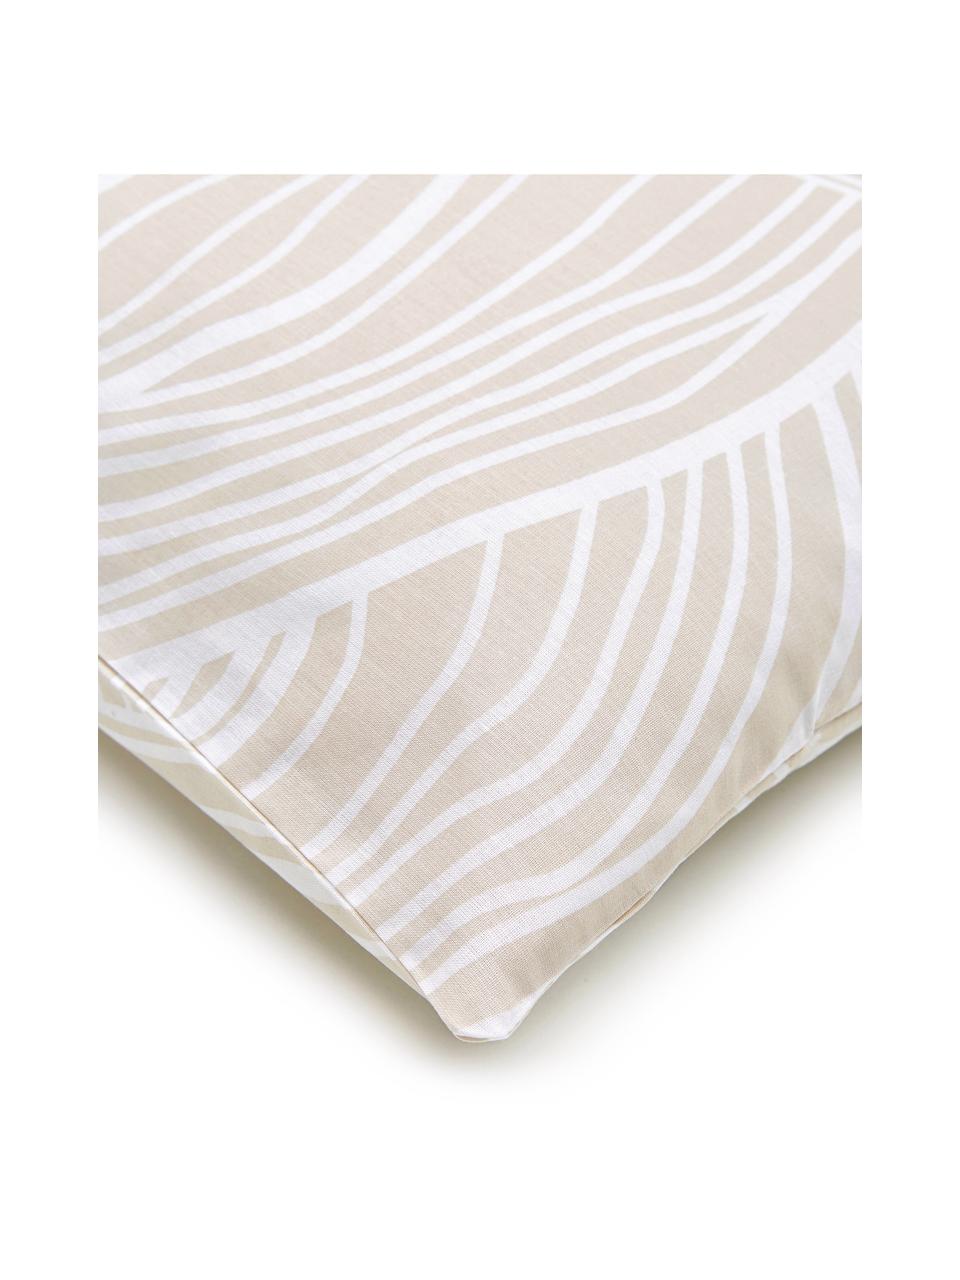 Poszewka na poduszkę z bawełny Korey, 2 szt., Beżowy, biały, S 40 x D 80 cm